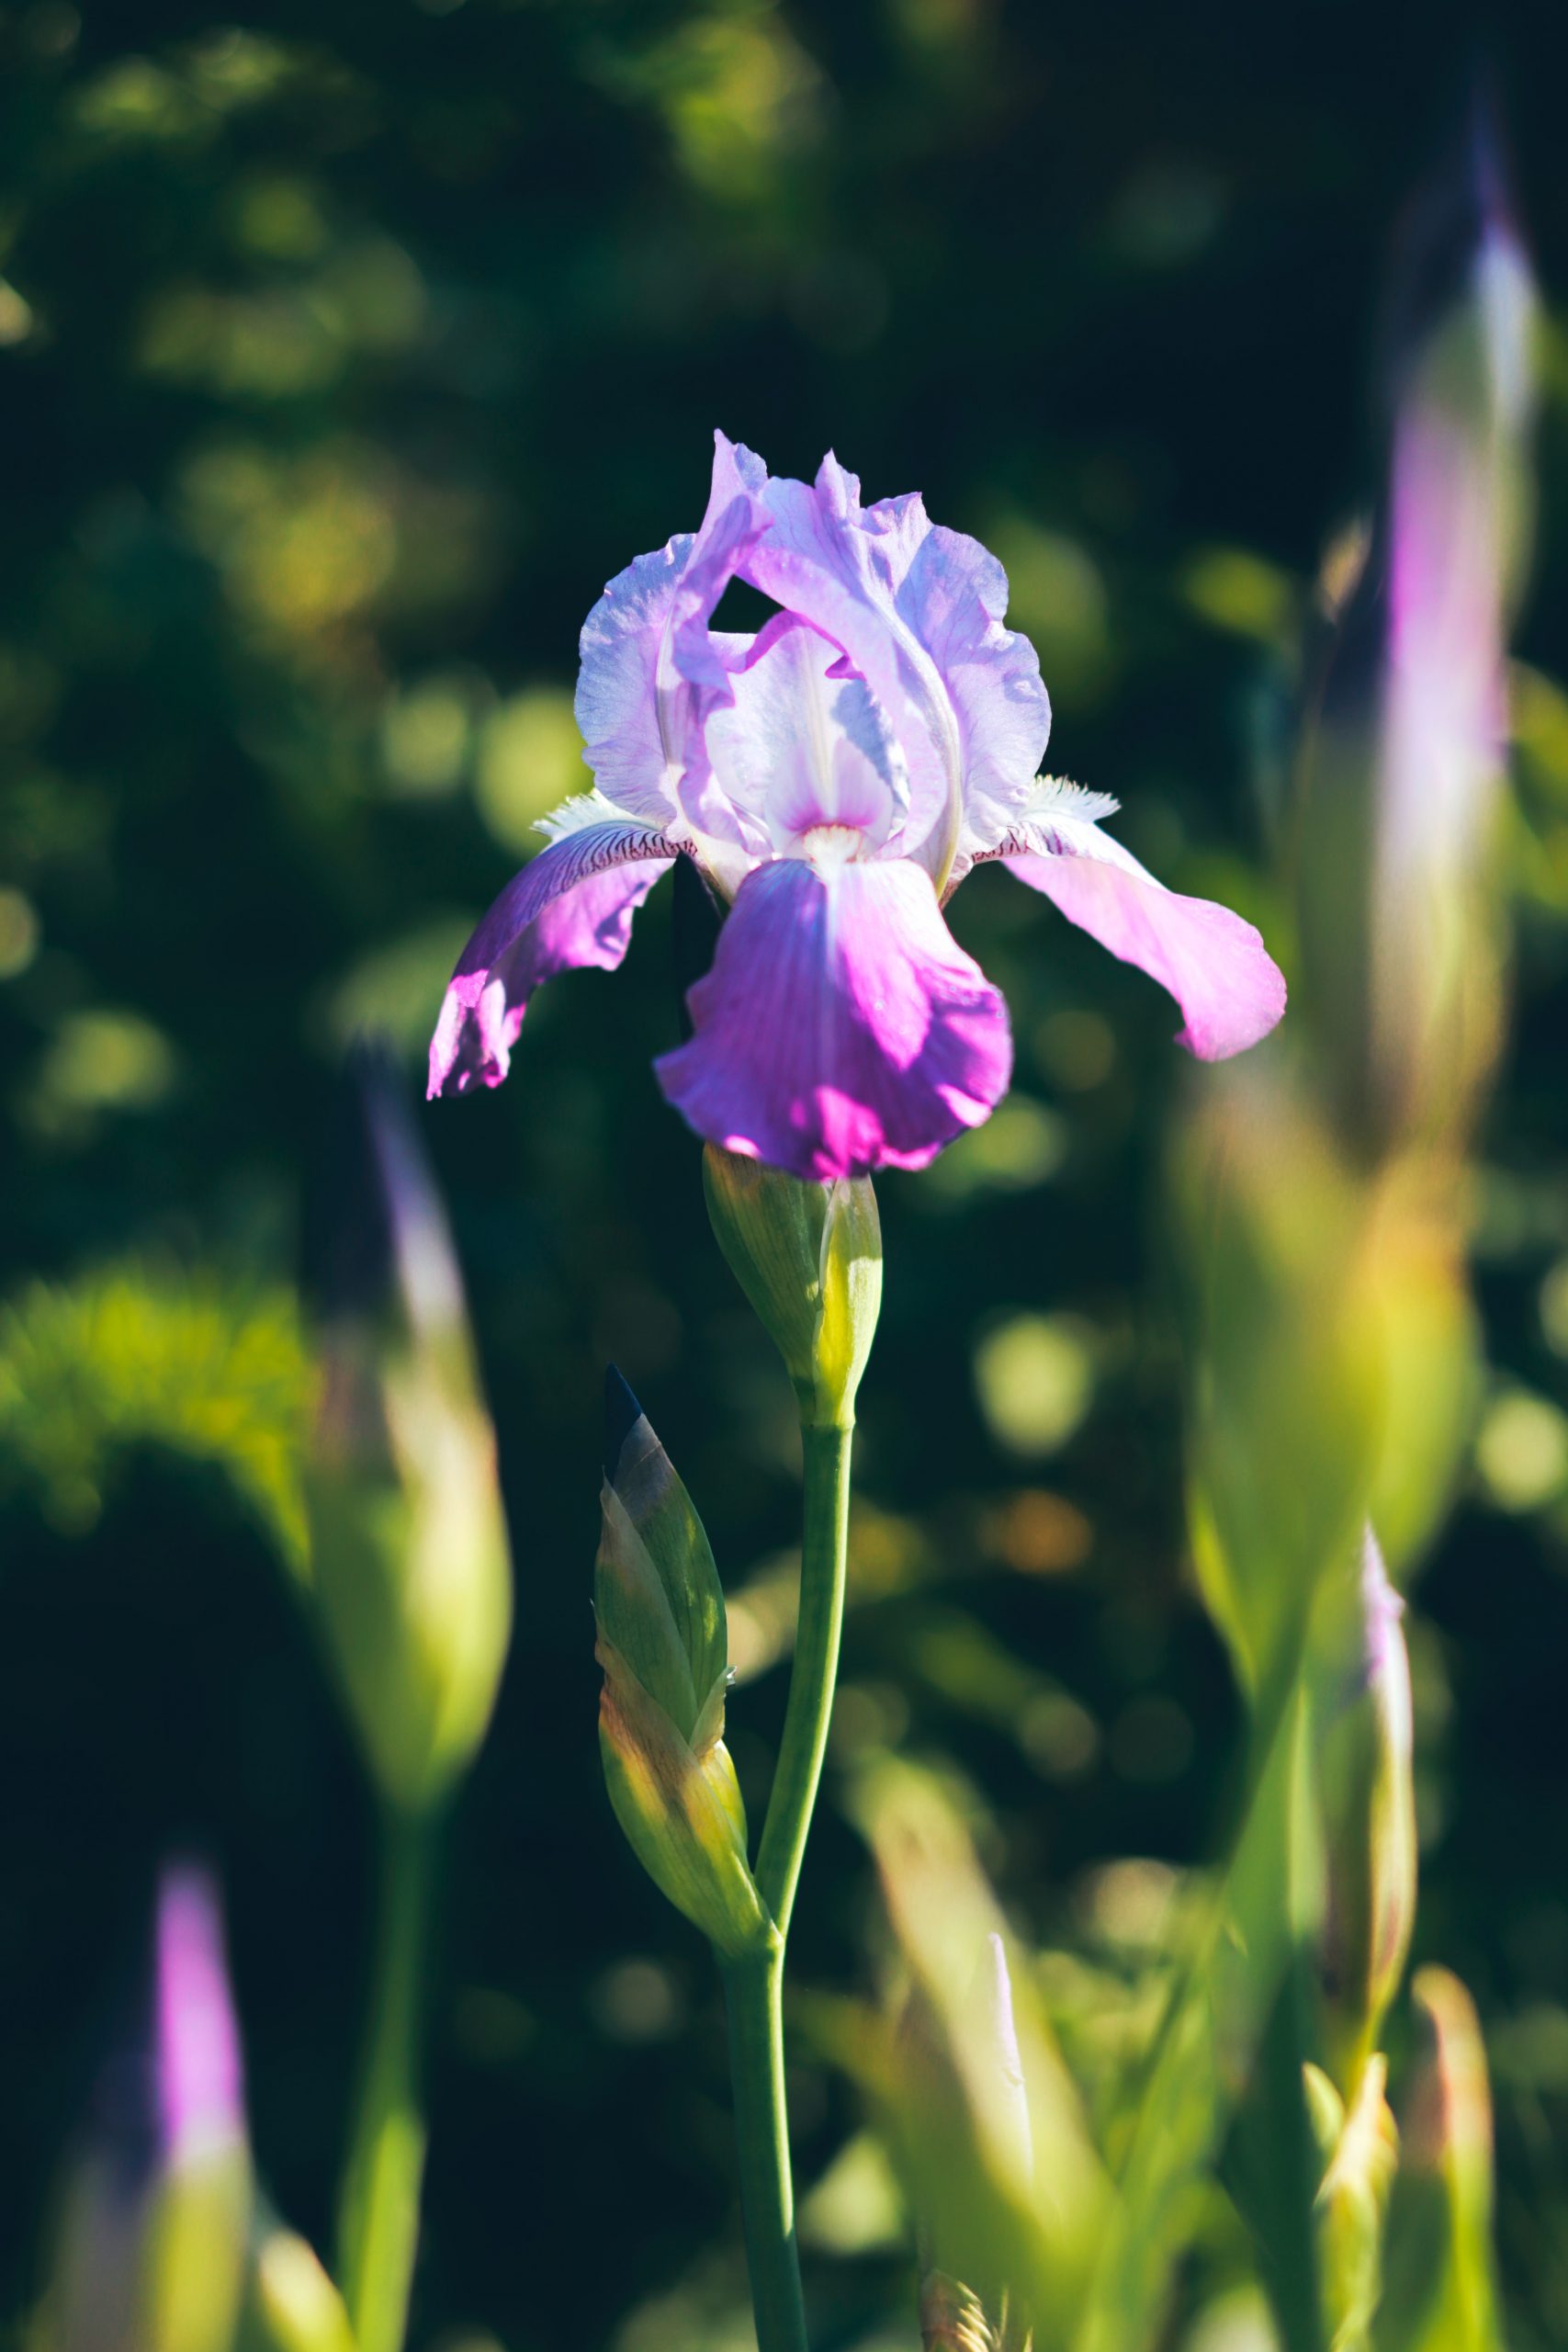 Iris, flor de febrero y figura mitológica